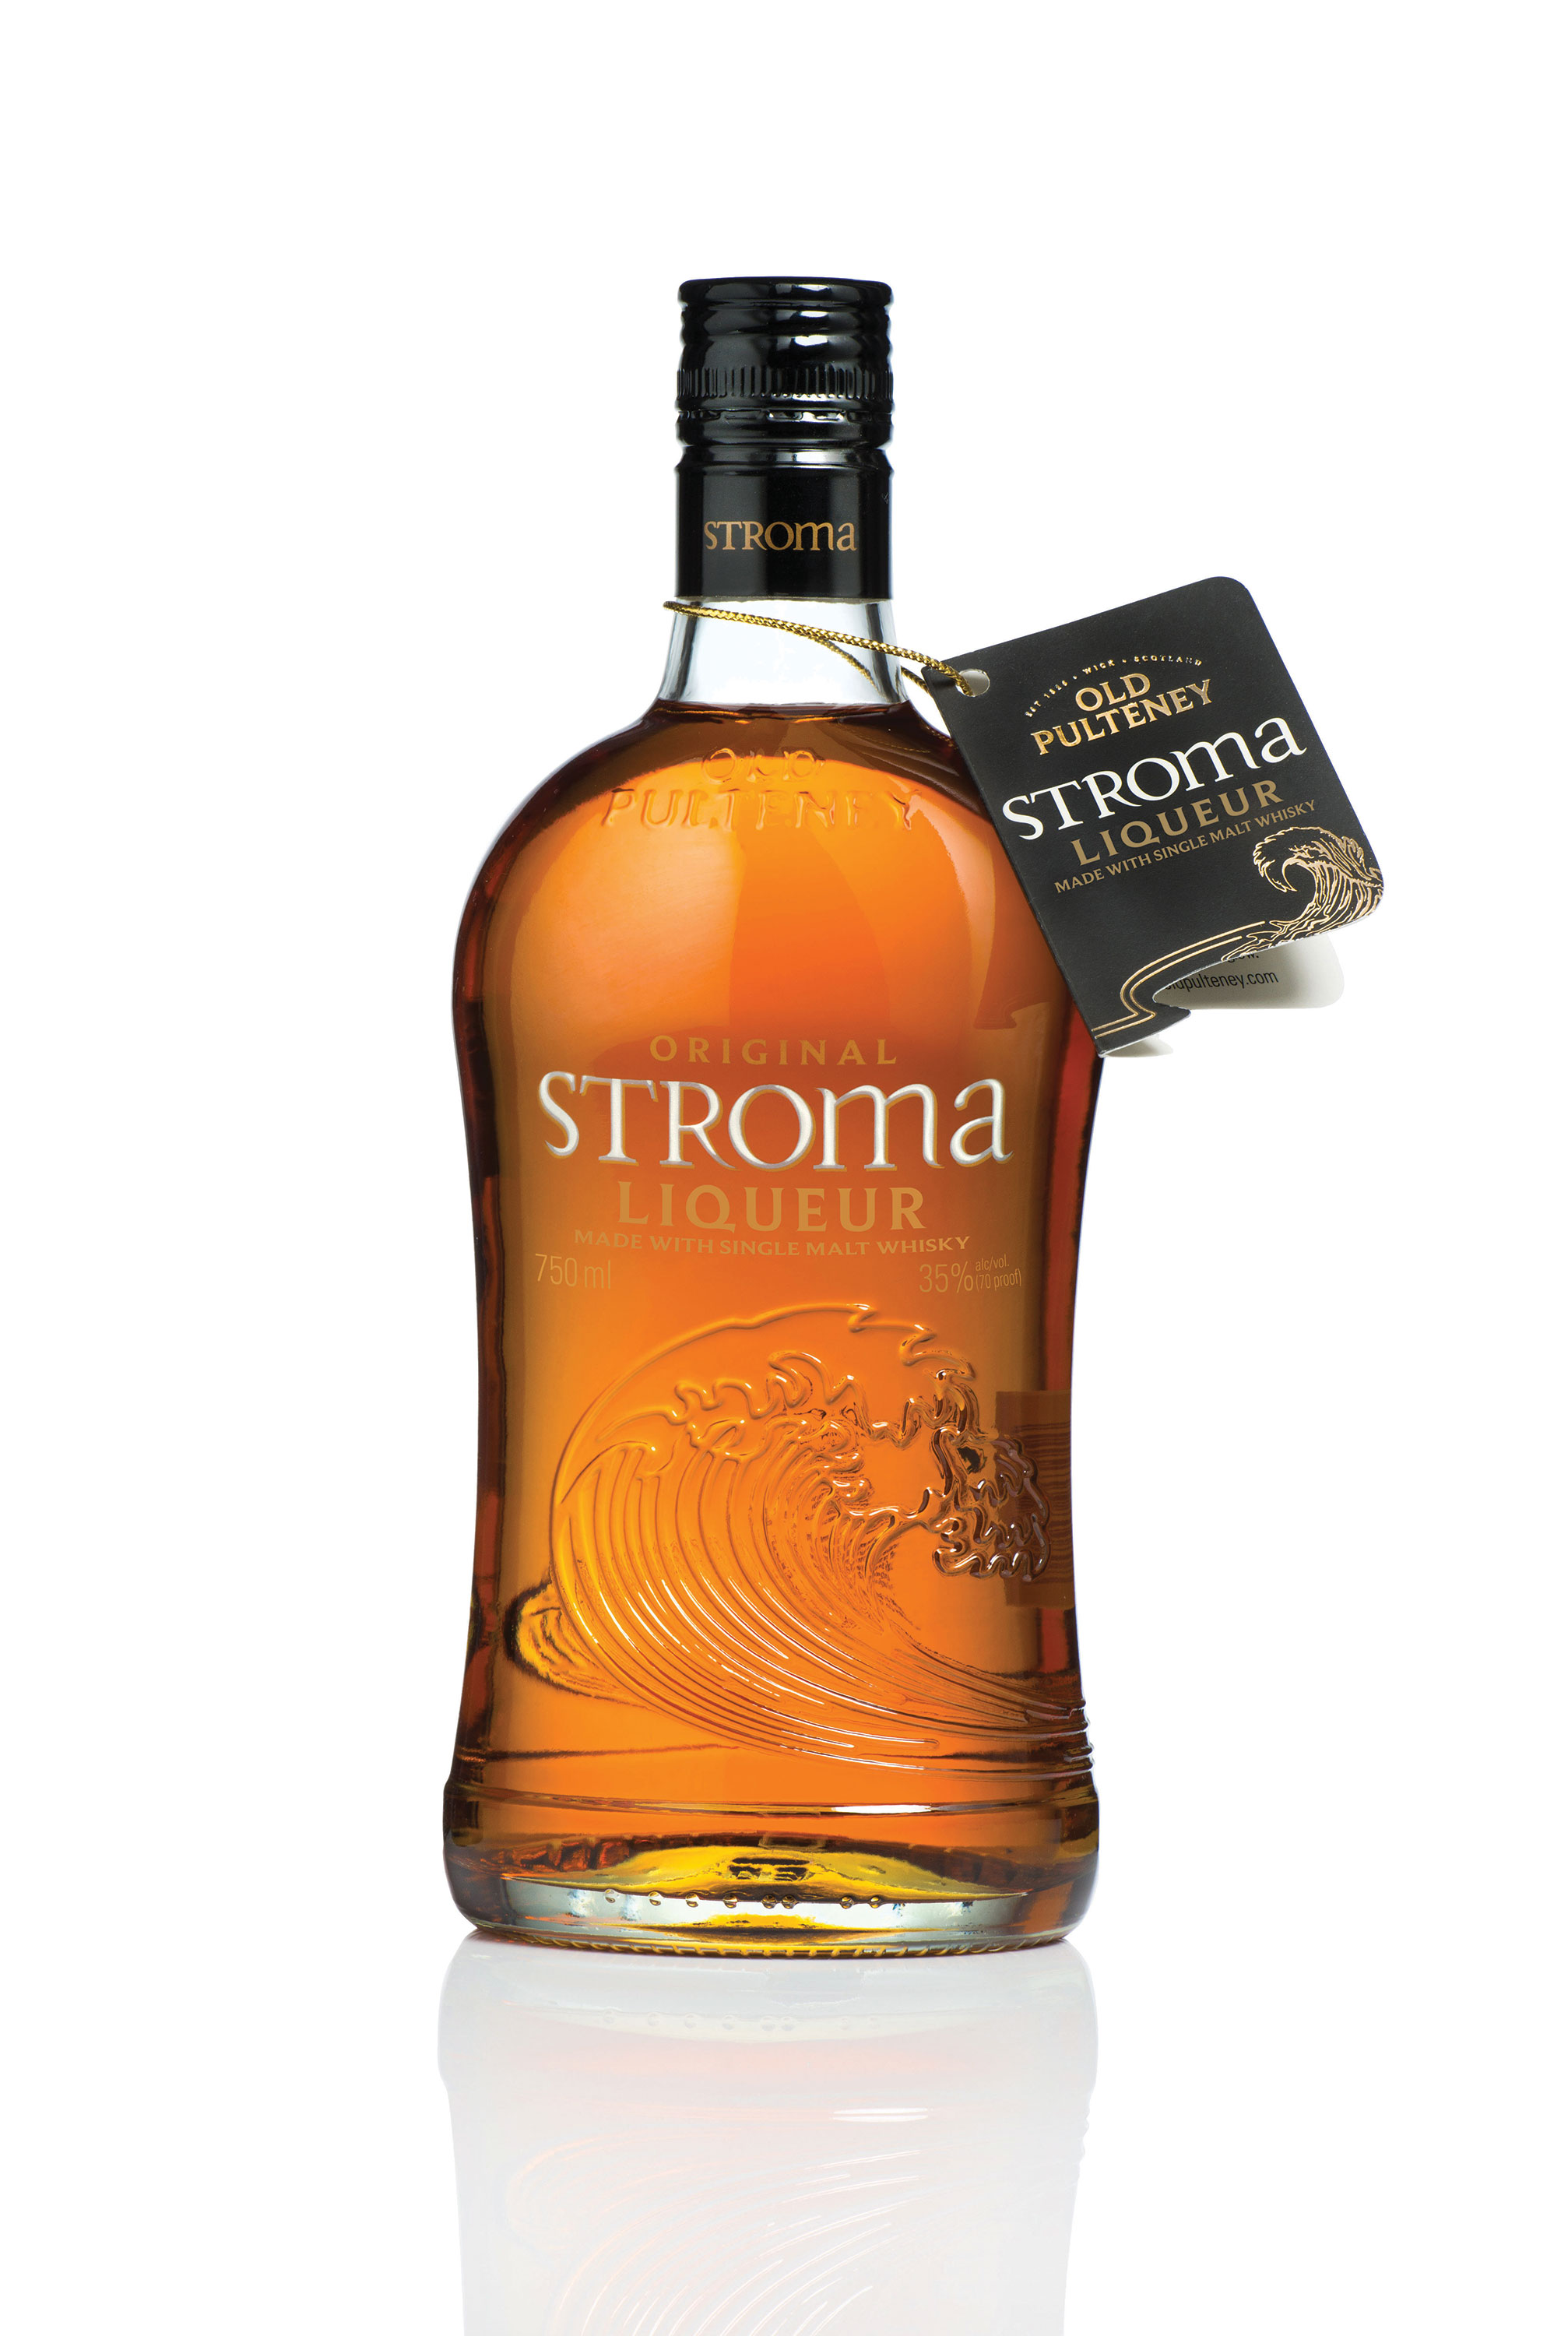 Stroma Liqueur